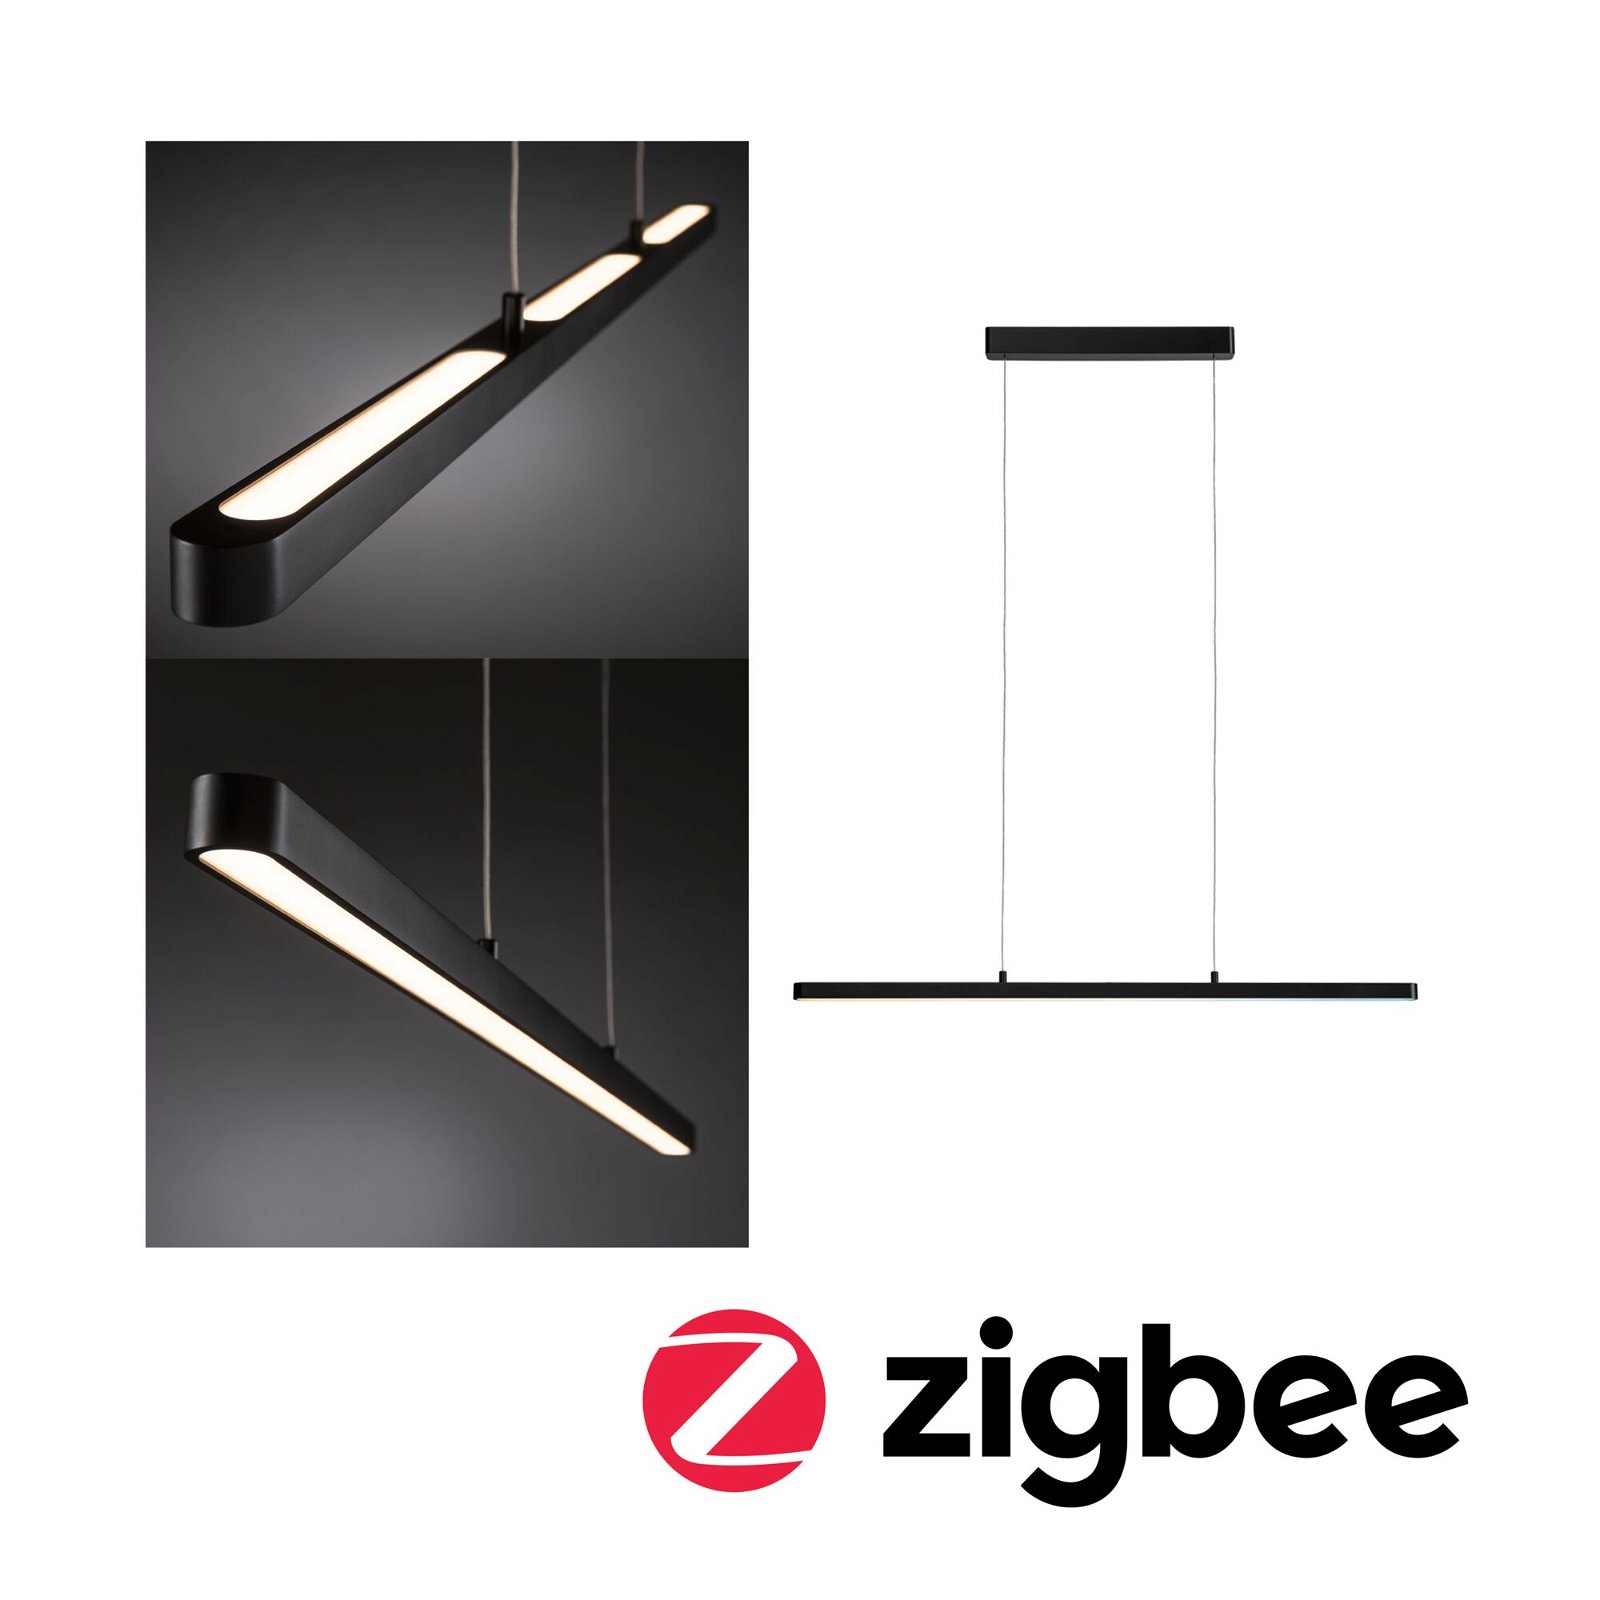 LED-hanglamp Smart Home Zigbee 3.0 Lento Tunable White 3x2100lm 3x13,5W Zwart mat dimbaar